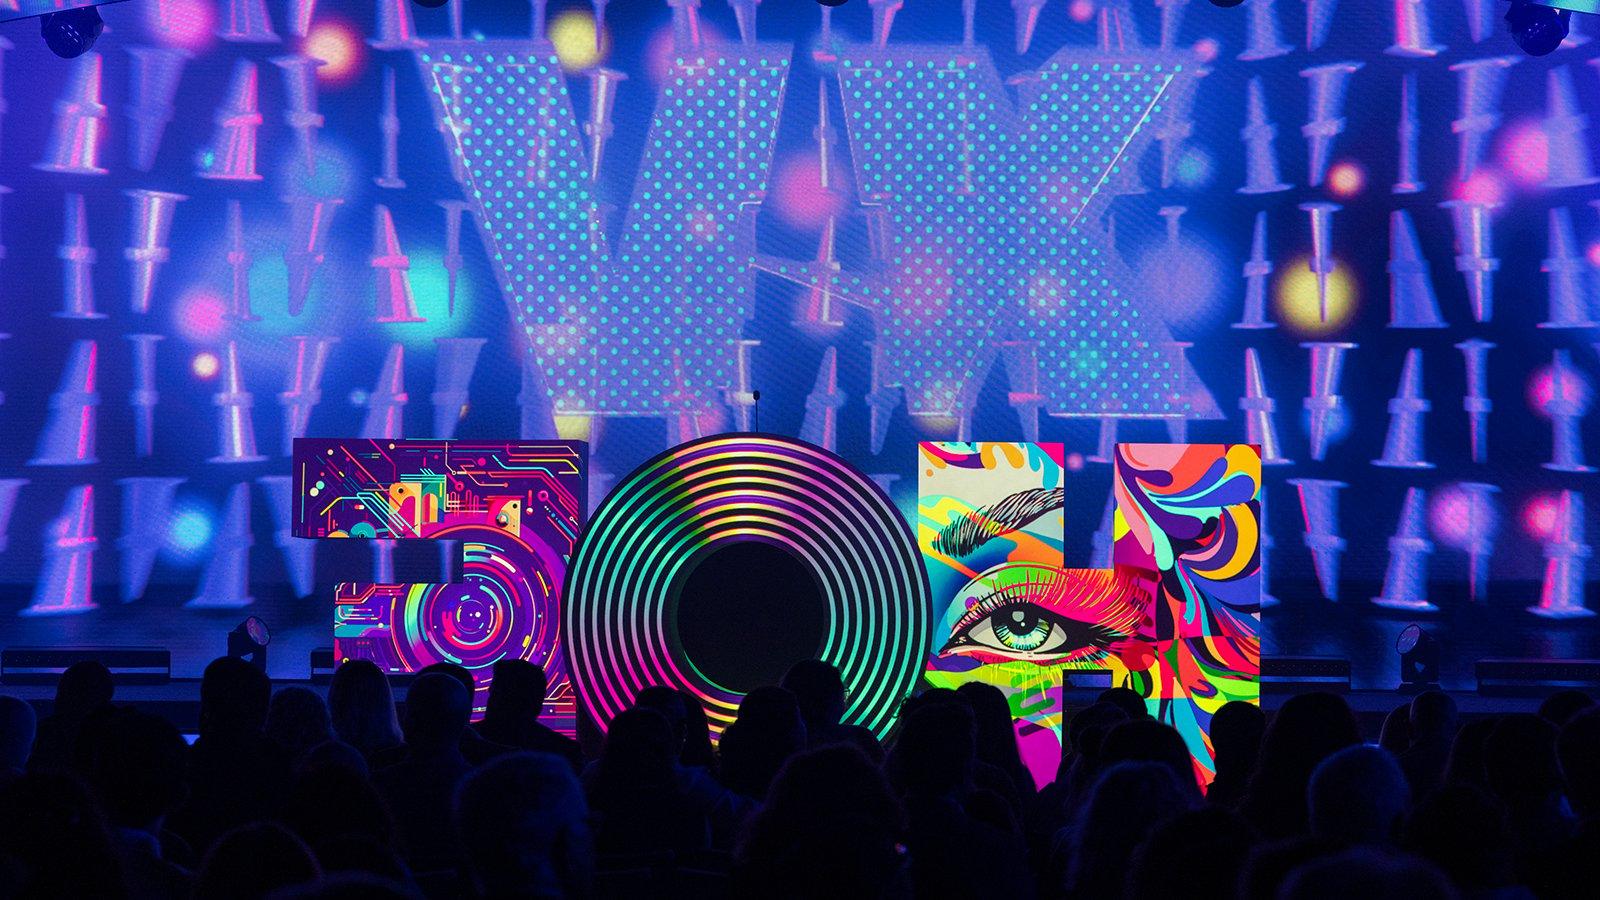 一个巨大的字母“HOF”雕塑坐落在满帆 Live Venue舞台上，每个字母上都投射着不同的彩色图像. 这些字母在一个紫色的大屏幕前，屏幕上用大字体显示着罗马数字“XV”. In front of the stage is a black silhouette of the crowd.